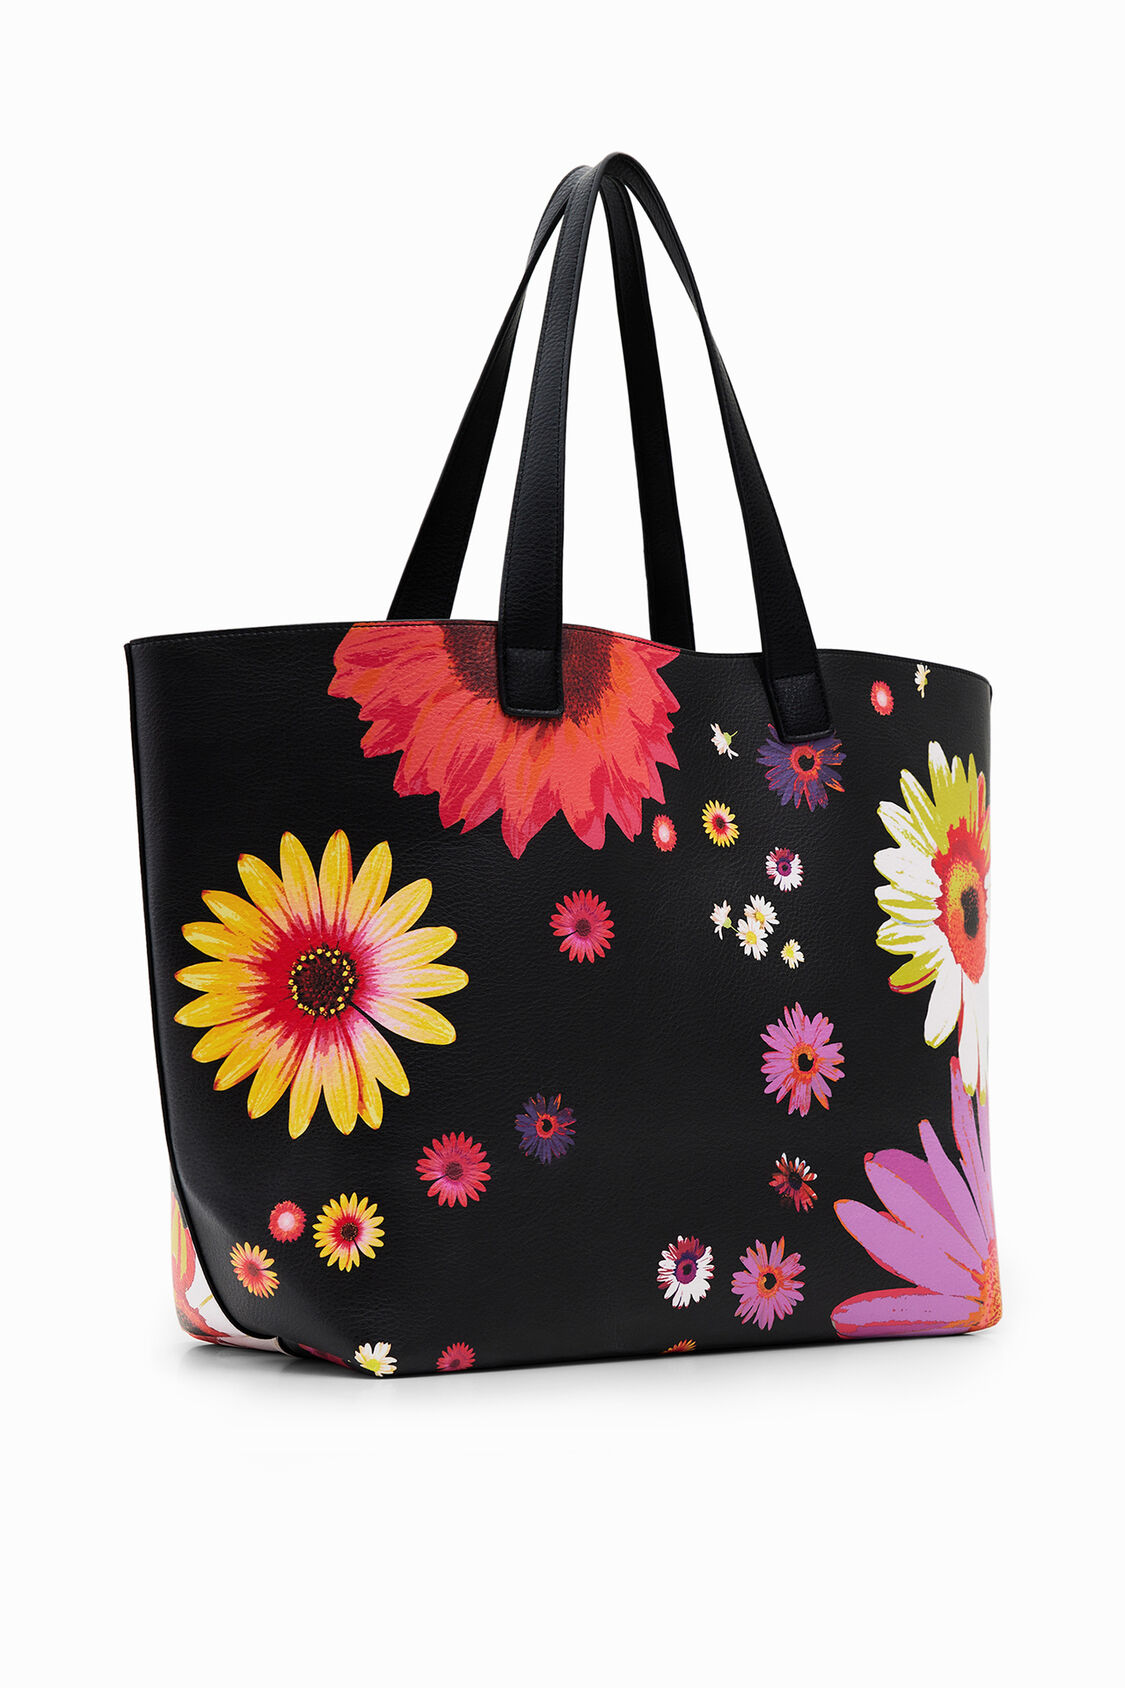 shopper extra reversible floral | Desigual.com